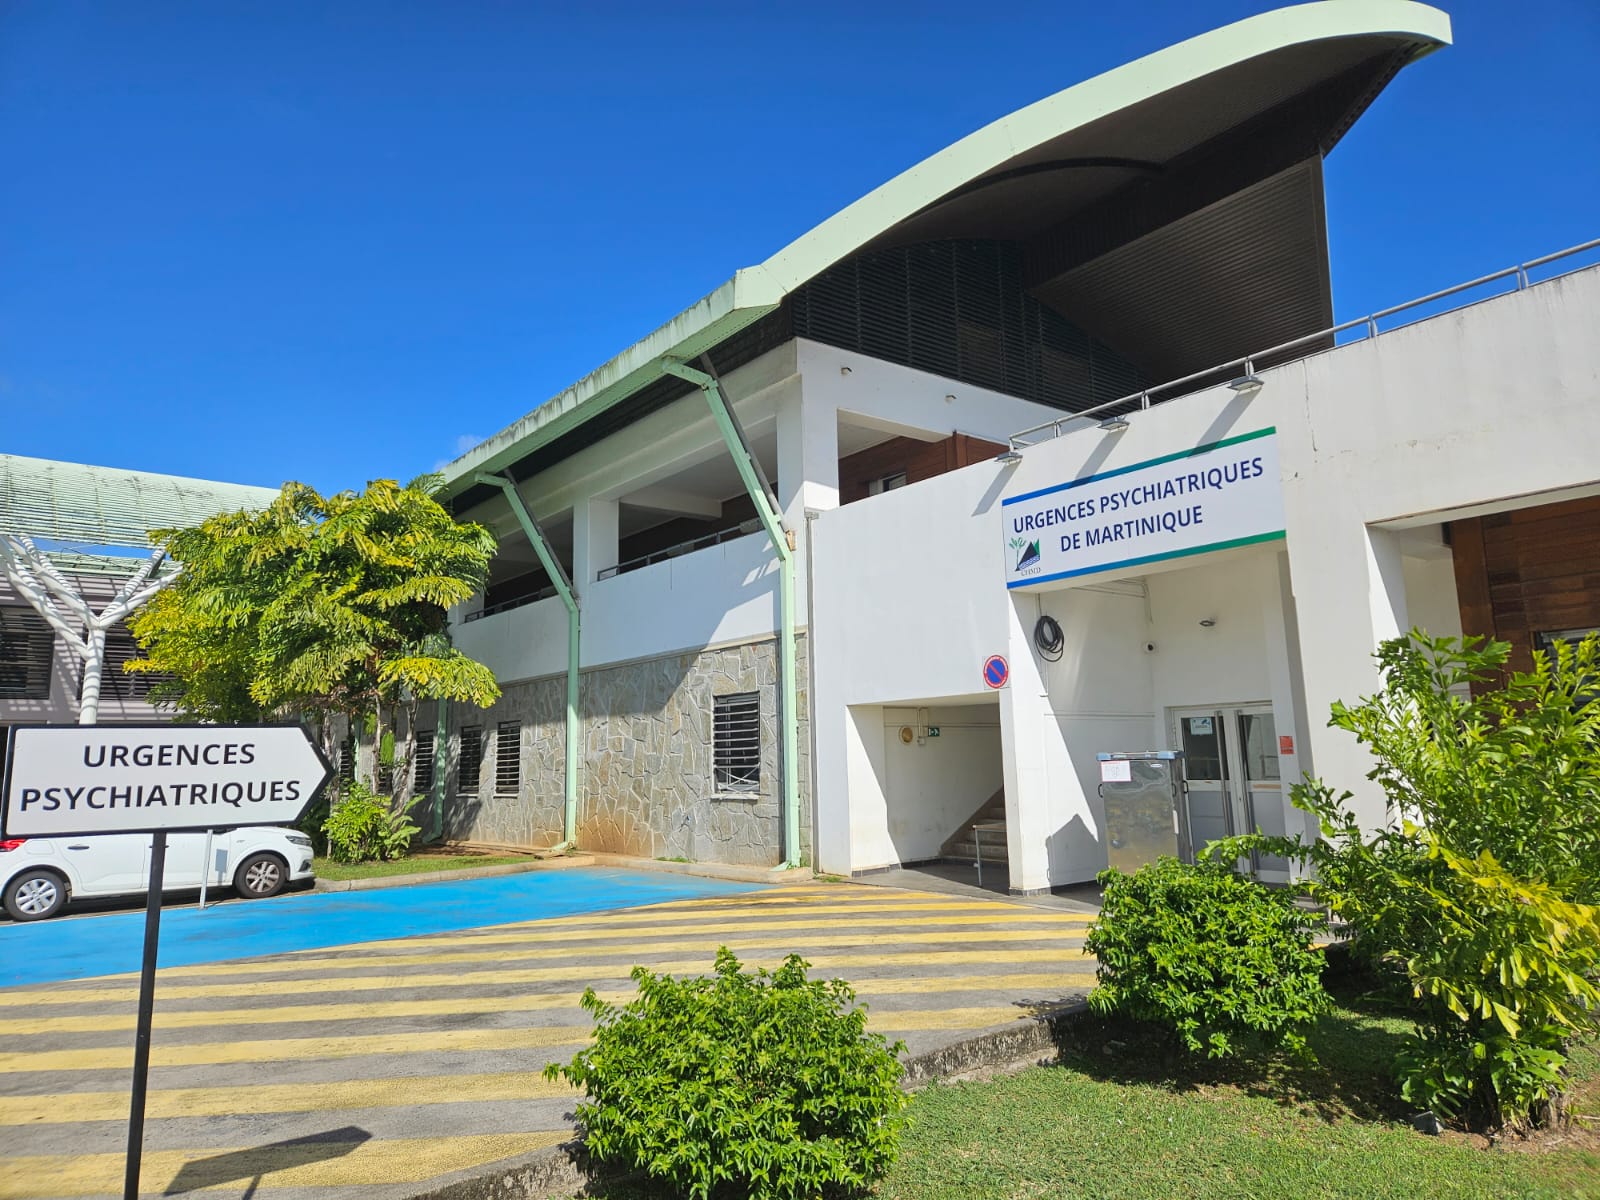     L'hôpital psychiatrique de Martinique célèbre ses 70 ans d'existence

